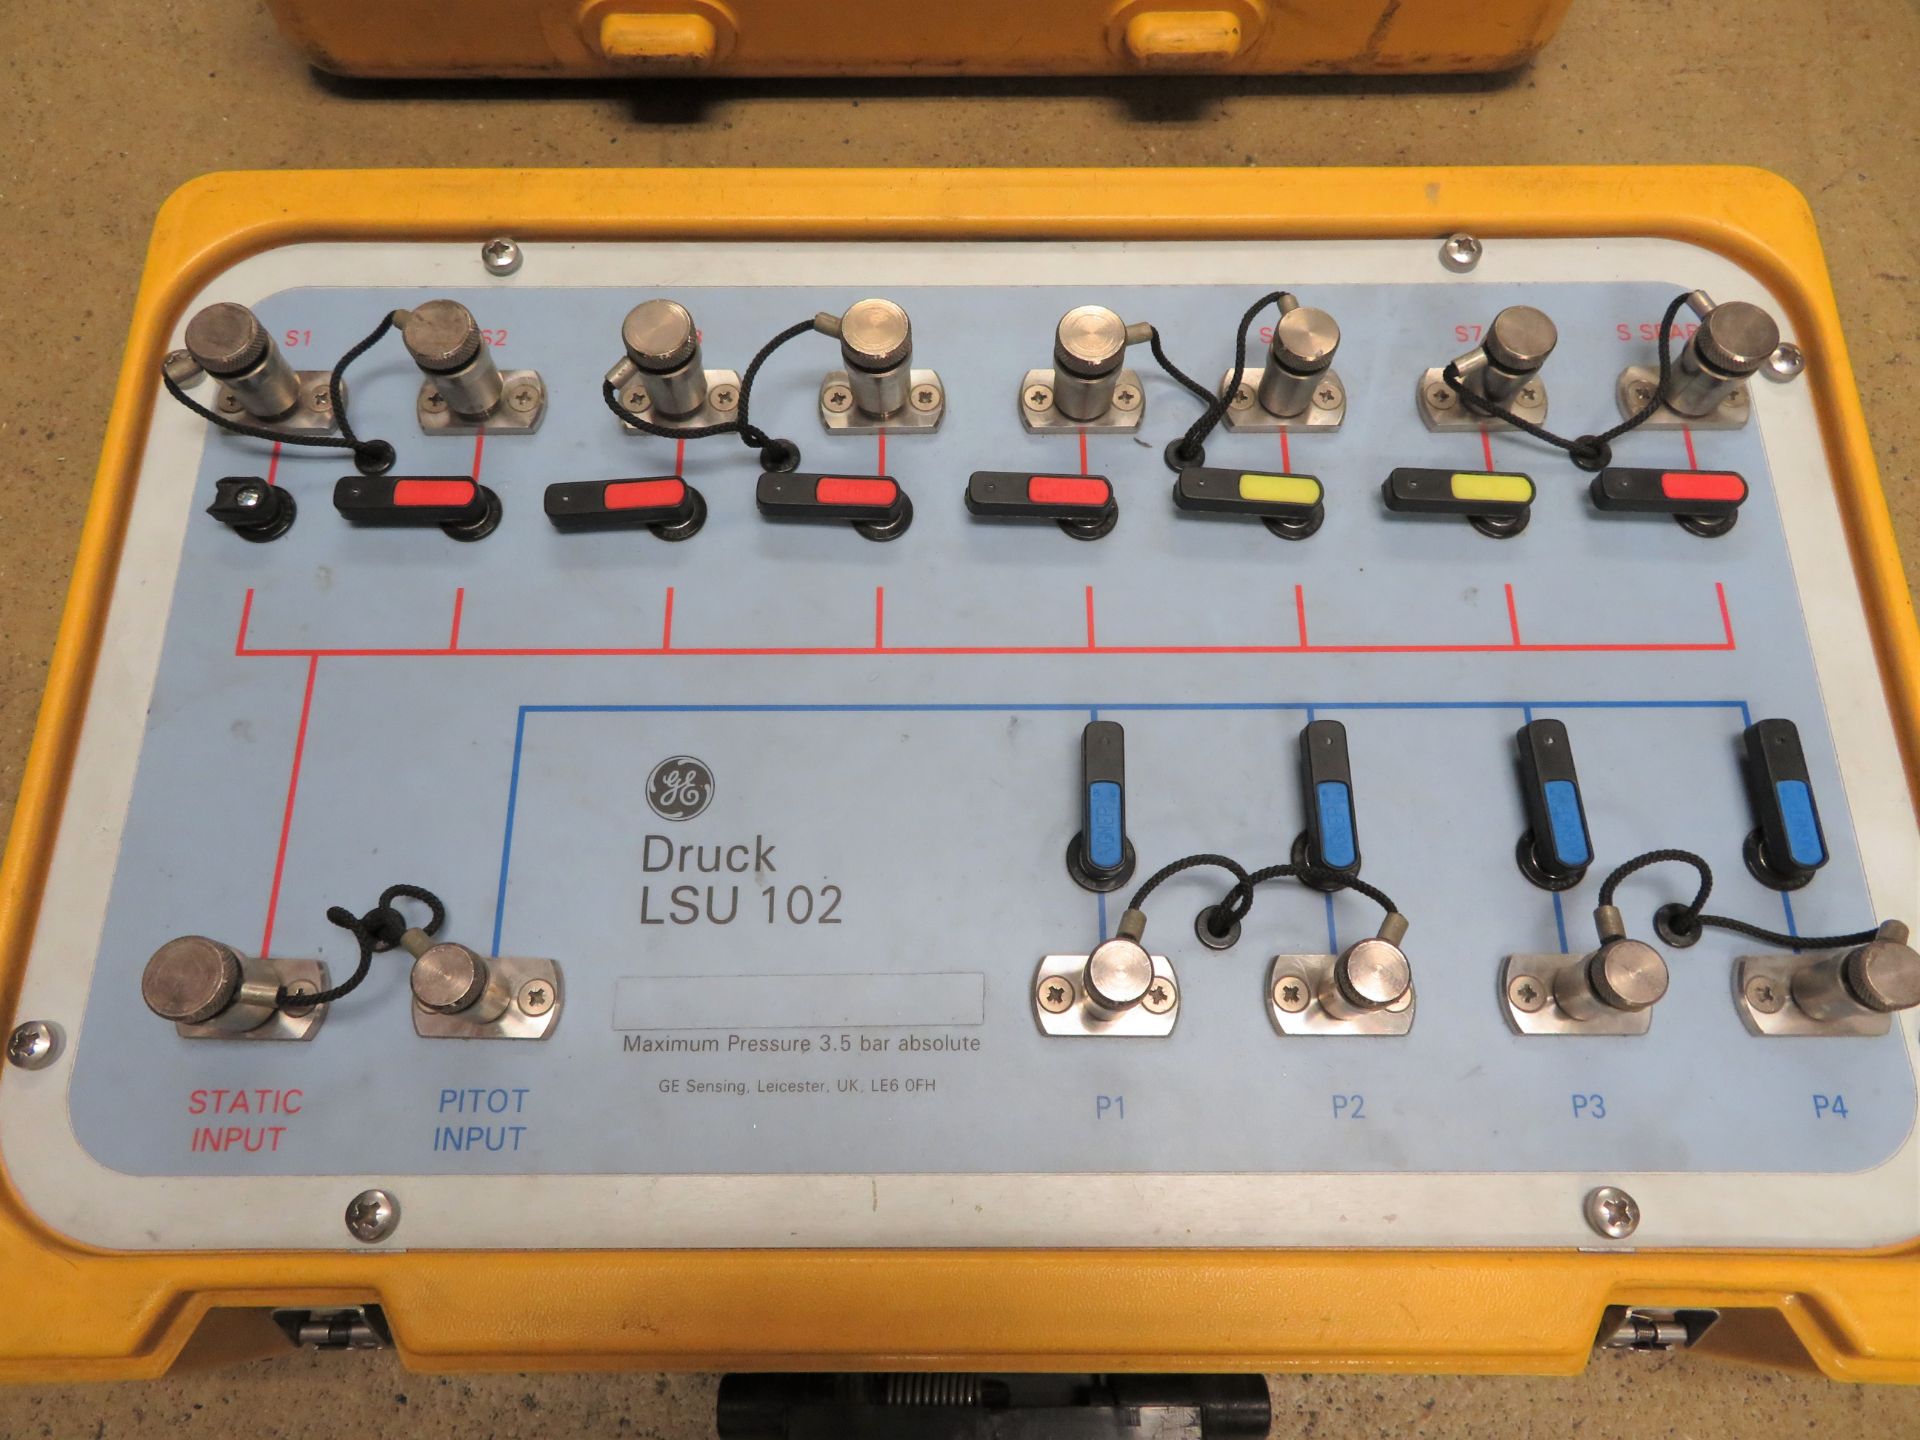 GE Druck LSU 102 Switching Unit in Case.